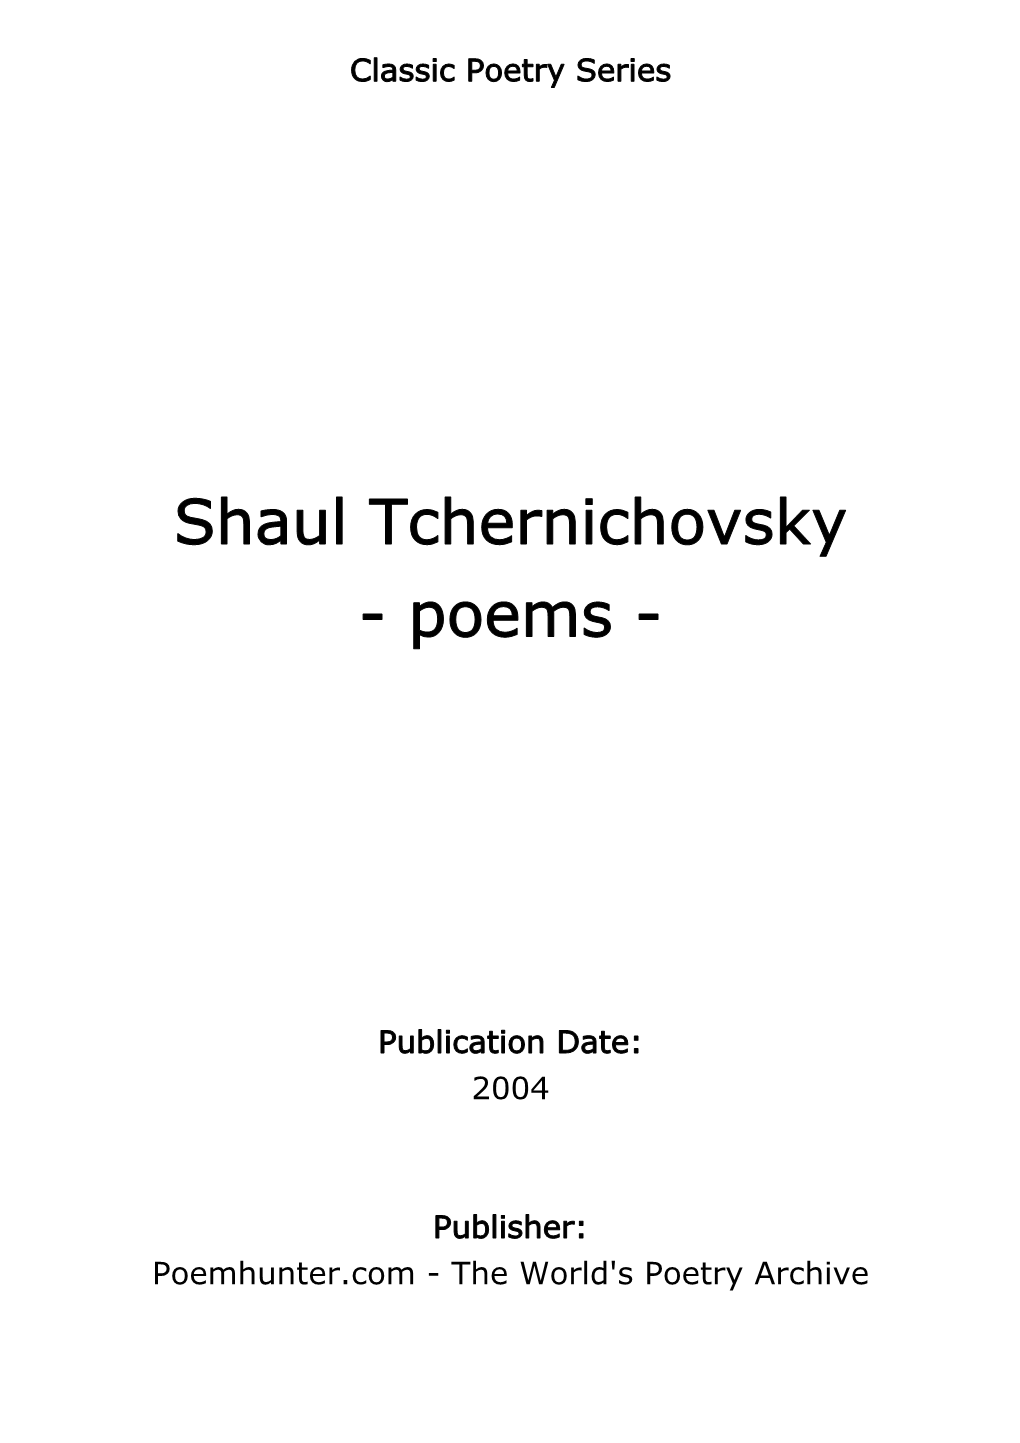 Shaul Tchernichovsky - Poems